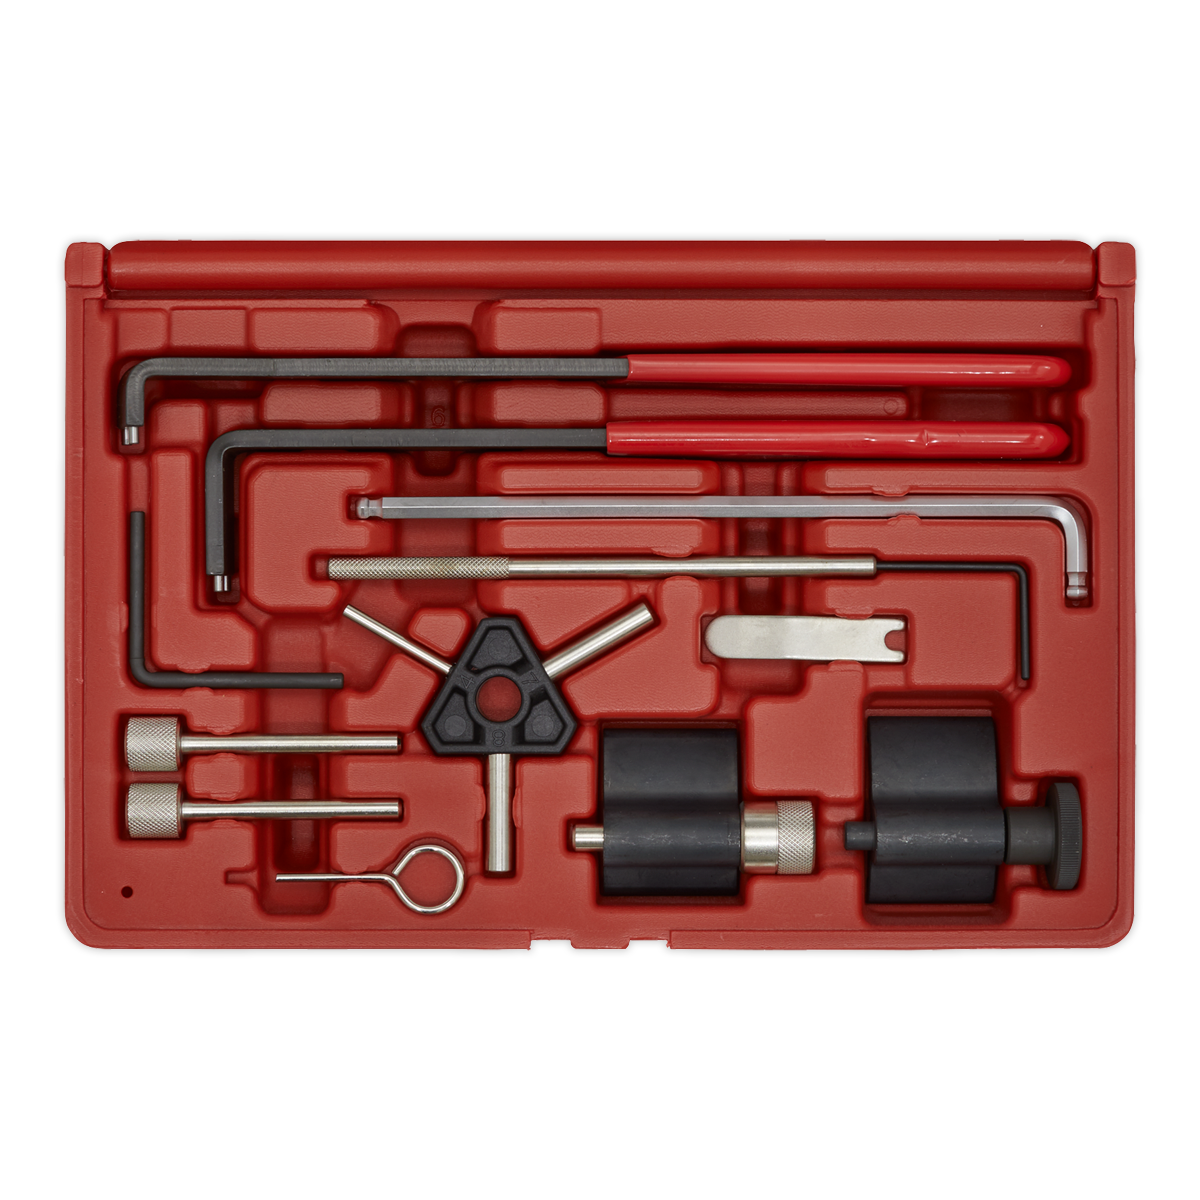 Diesel Engine Timing Tool Kit - for VAG, Dodge, Ford, Mitsubishi - 1.2D/1.4D/1.6D/1.9D/2.0D -Belt